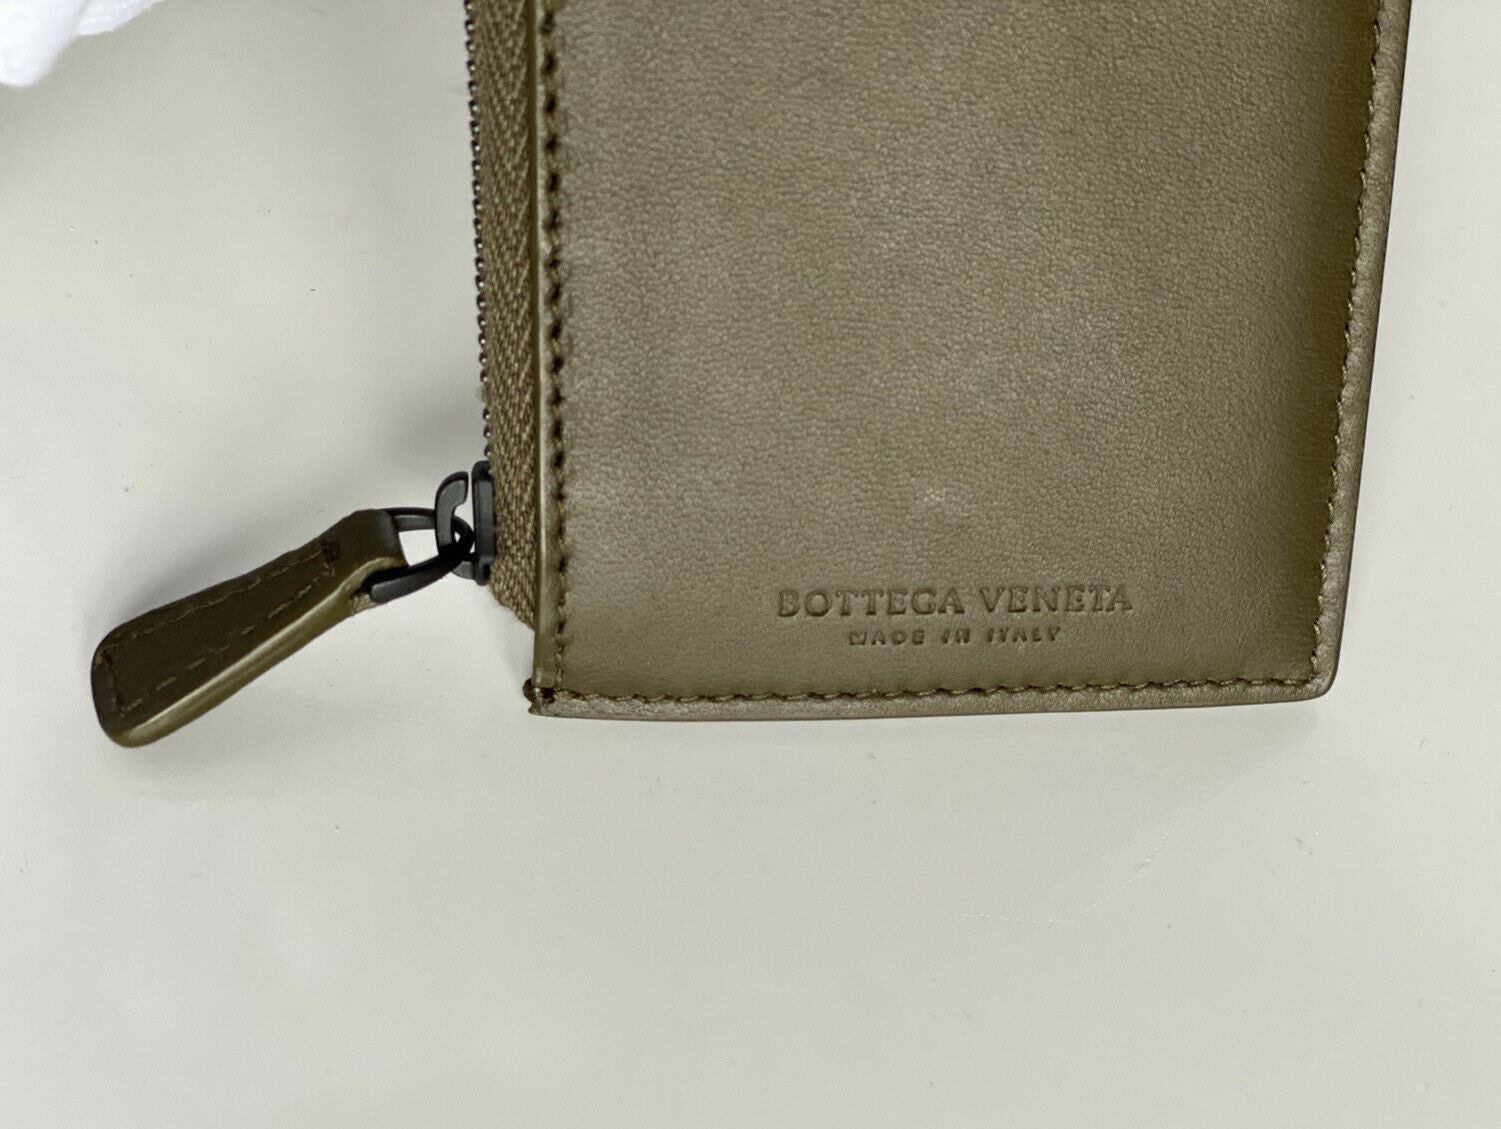 Neu mit Etikett: 390 $ Bottega Veneta Intrecciato Tartan Reißverschluss-Kartenetui aus Nappaleder 566752 